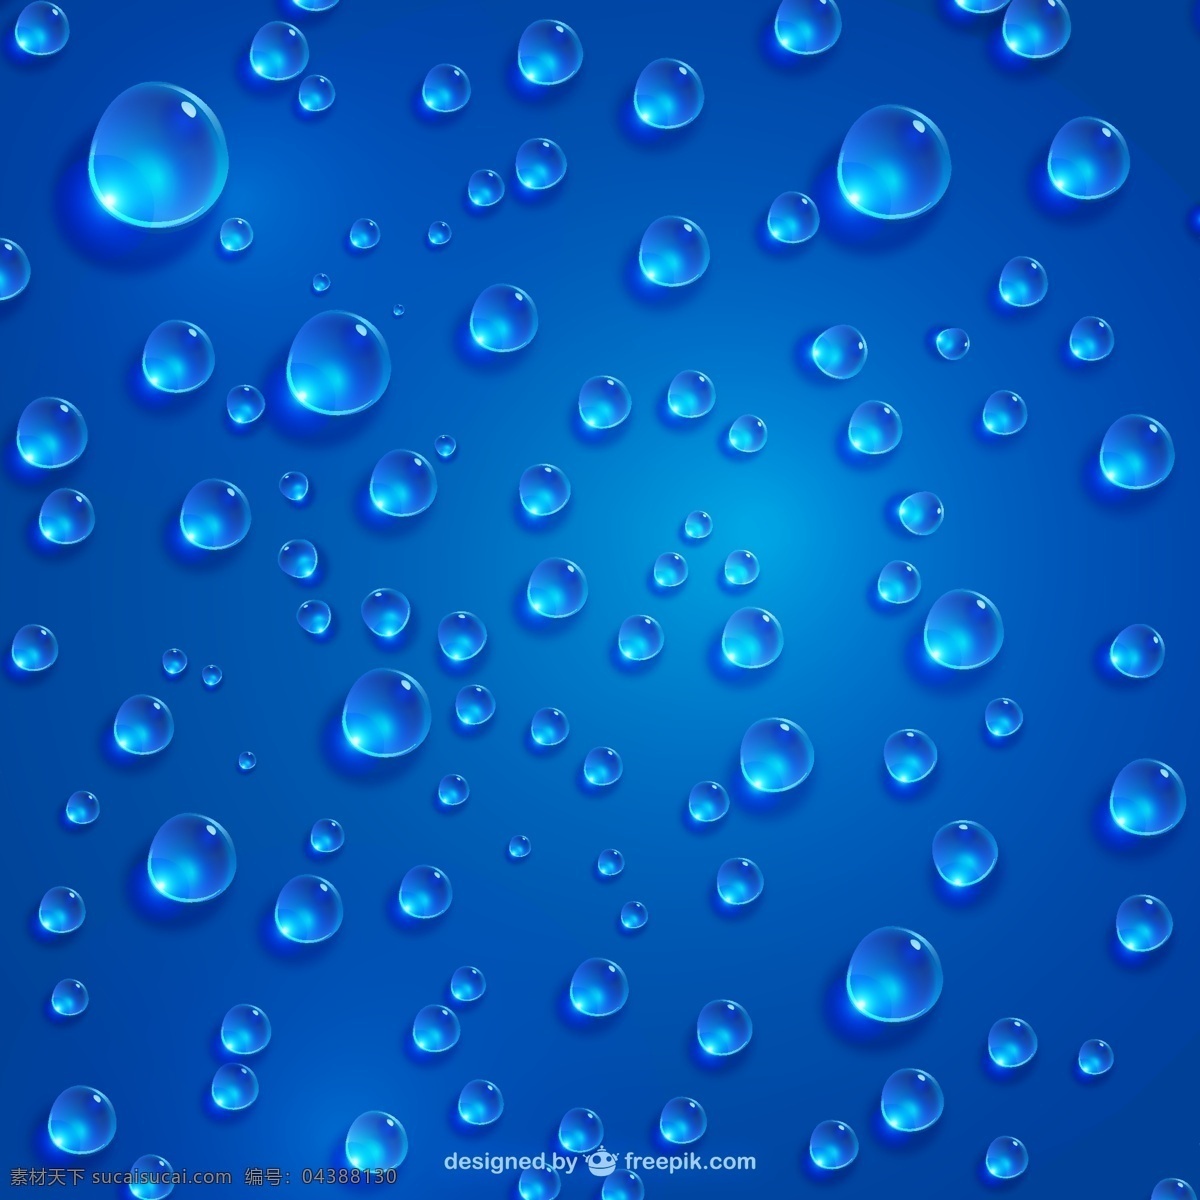 精美 水珠 背景图片 晶莹 水滴 蓝色 透明 雨滴 蓝色背景 矢量 高清图片